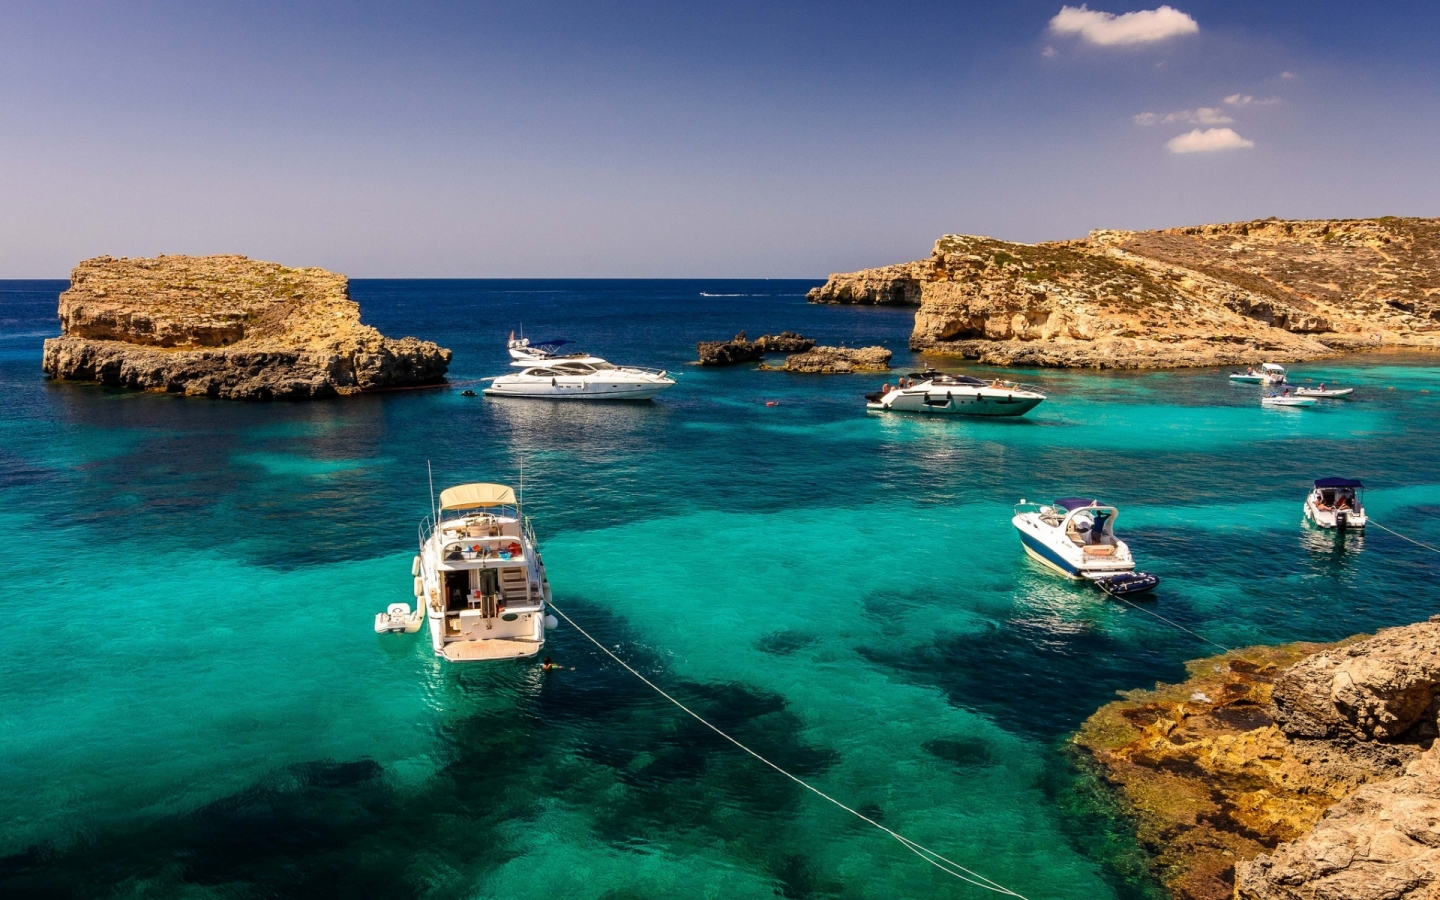 Malta Sea Corner for 1440 x 900 widescreen resolution